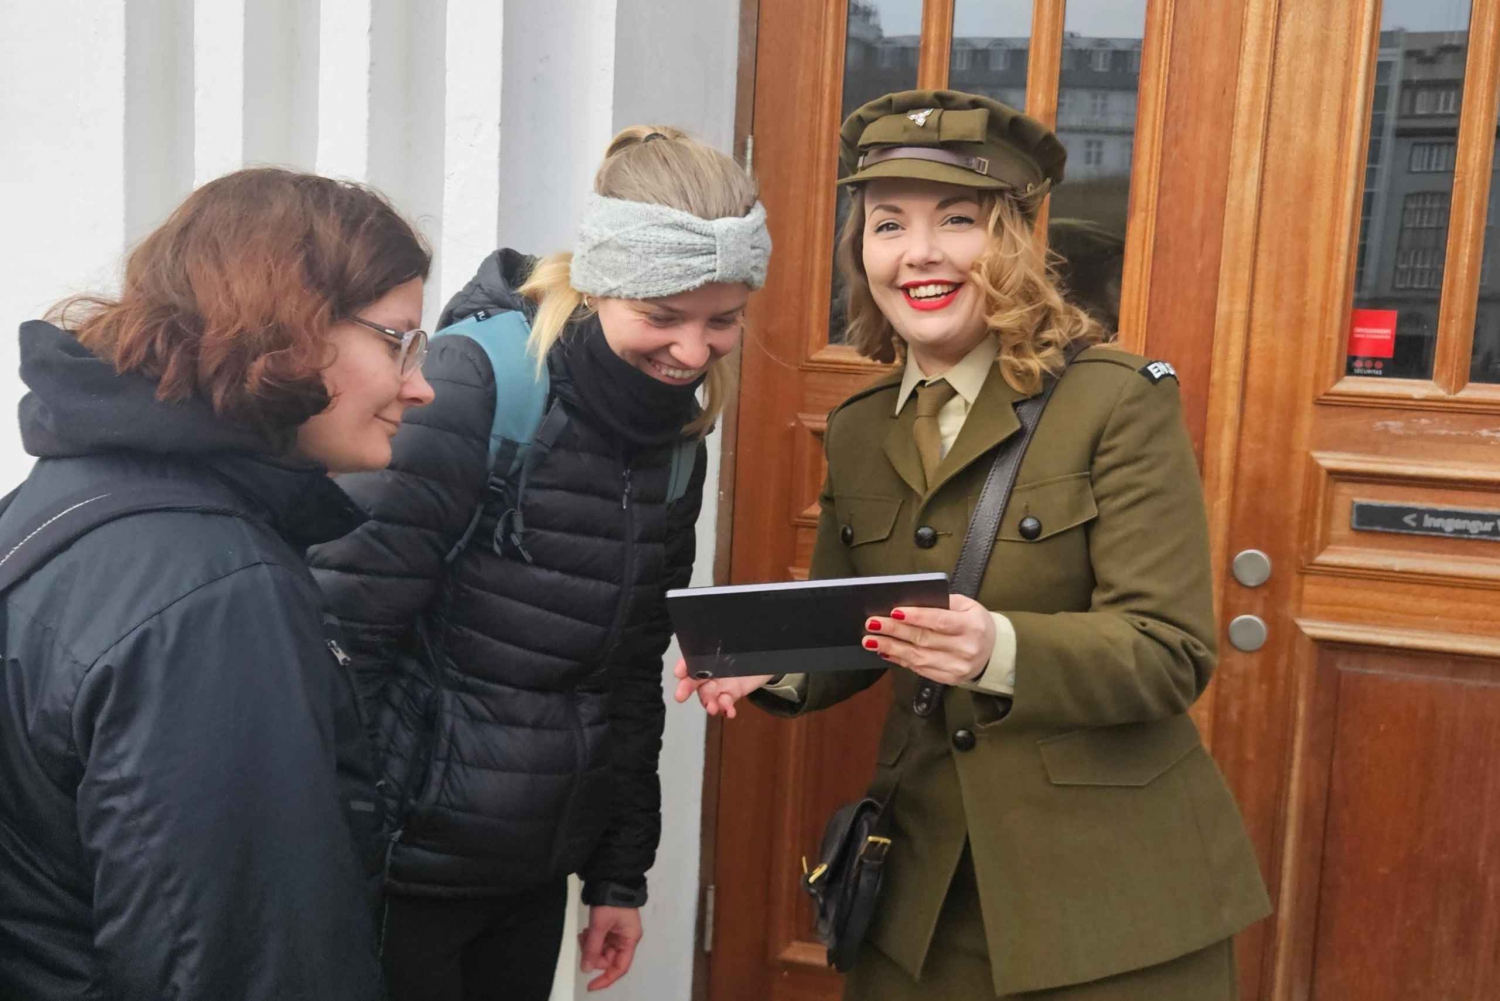 Reikiavik: Visita histórica de la II Guerra Mundial con un oficial británico de 1940